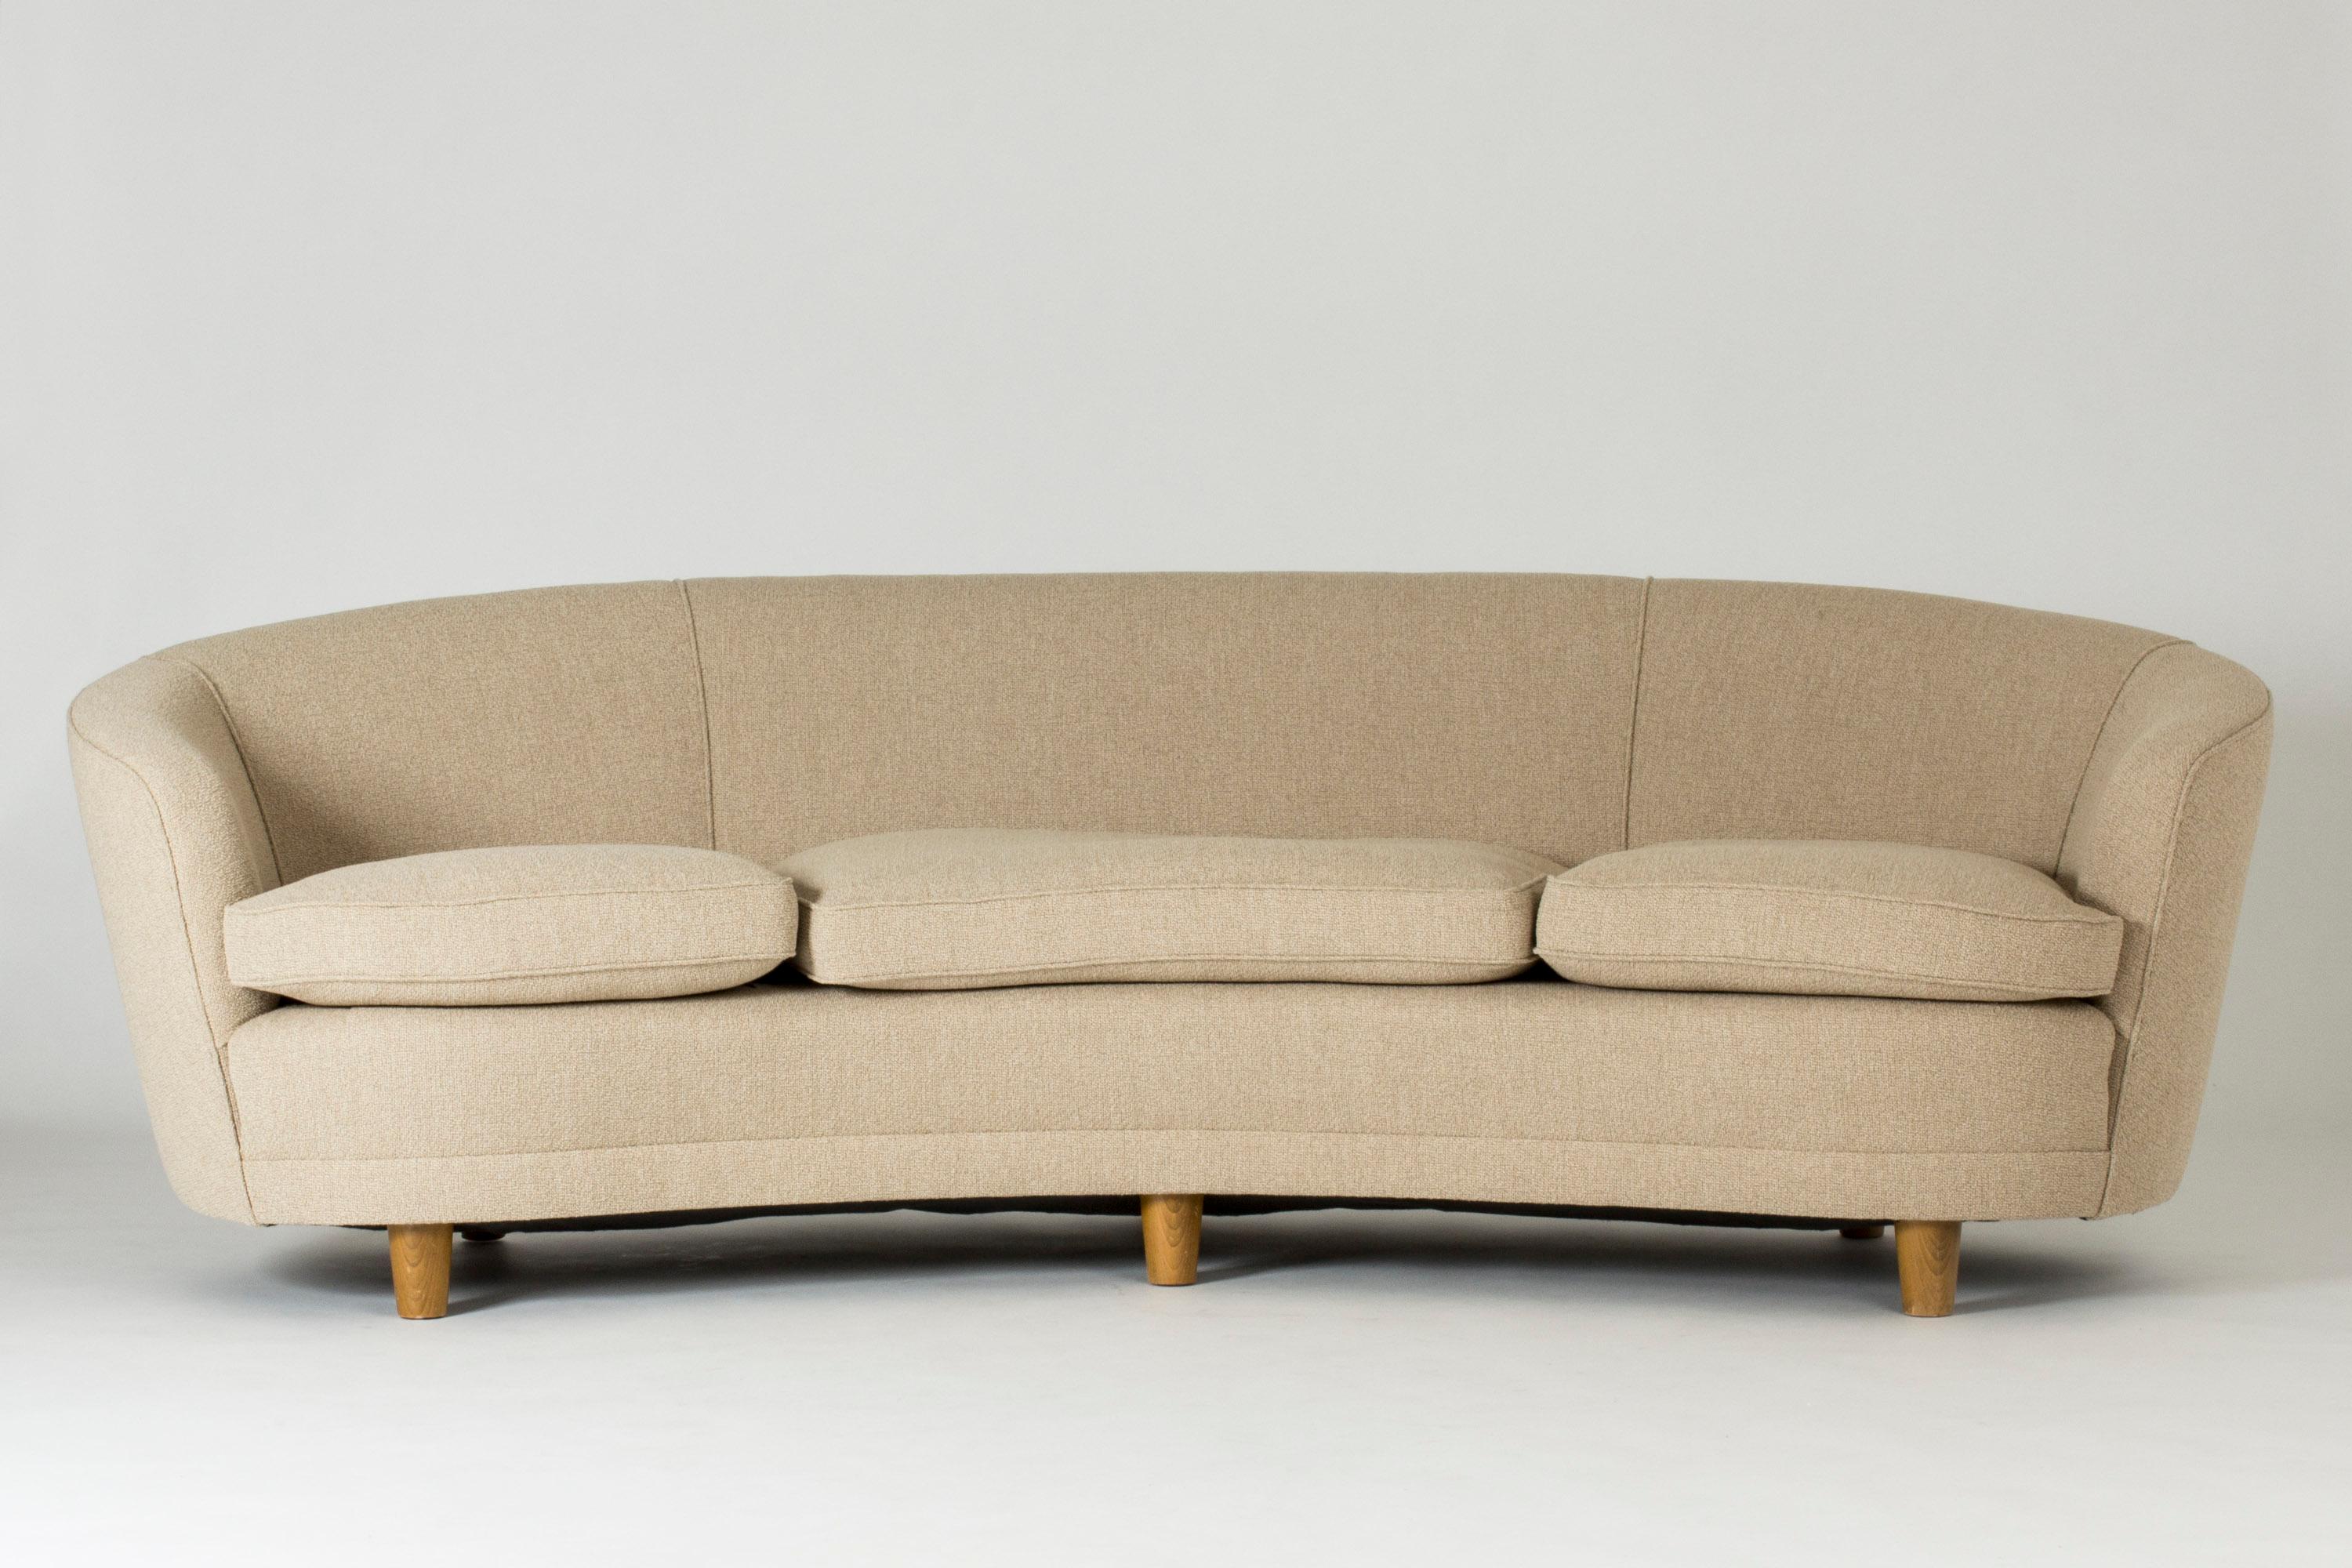 Grand canapé des années 1940, au design généreux et incurvé. Pieds ronds et trapus en bois, revêtement en tissu bouclé. Design très élégant, haute qualité et confort.